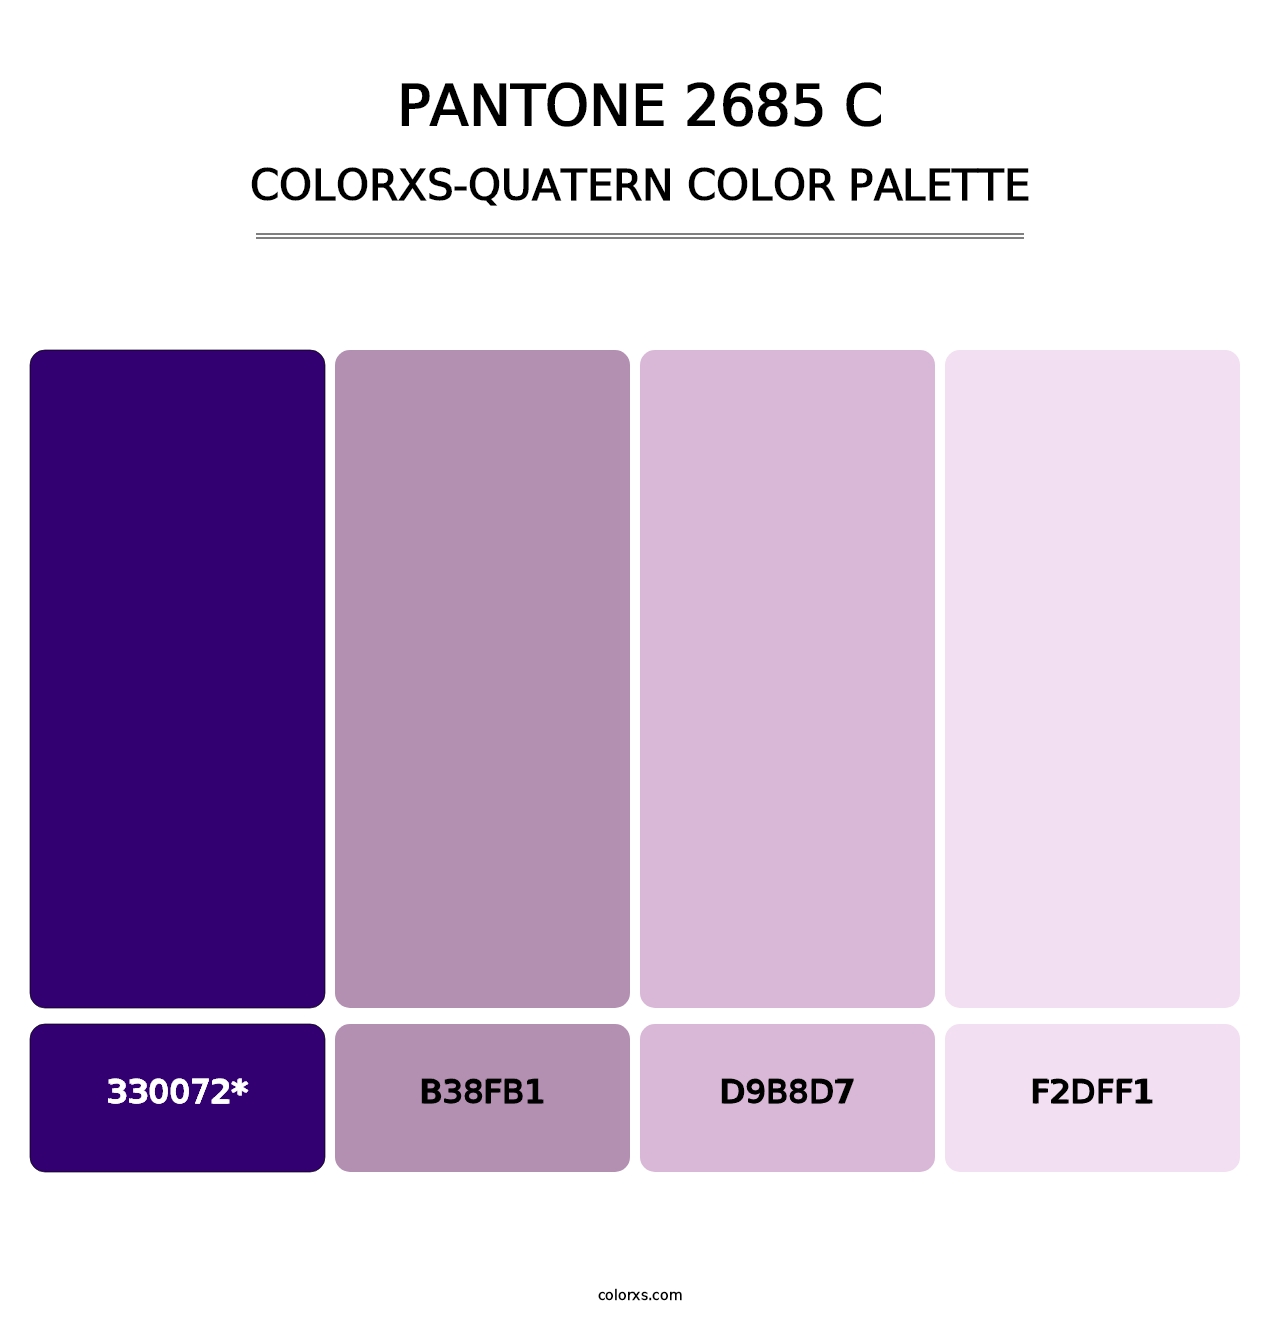 PANTONE 2685 C - Colorxs Quatern Palette